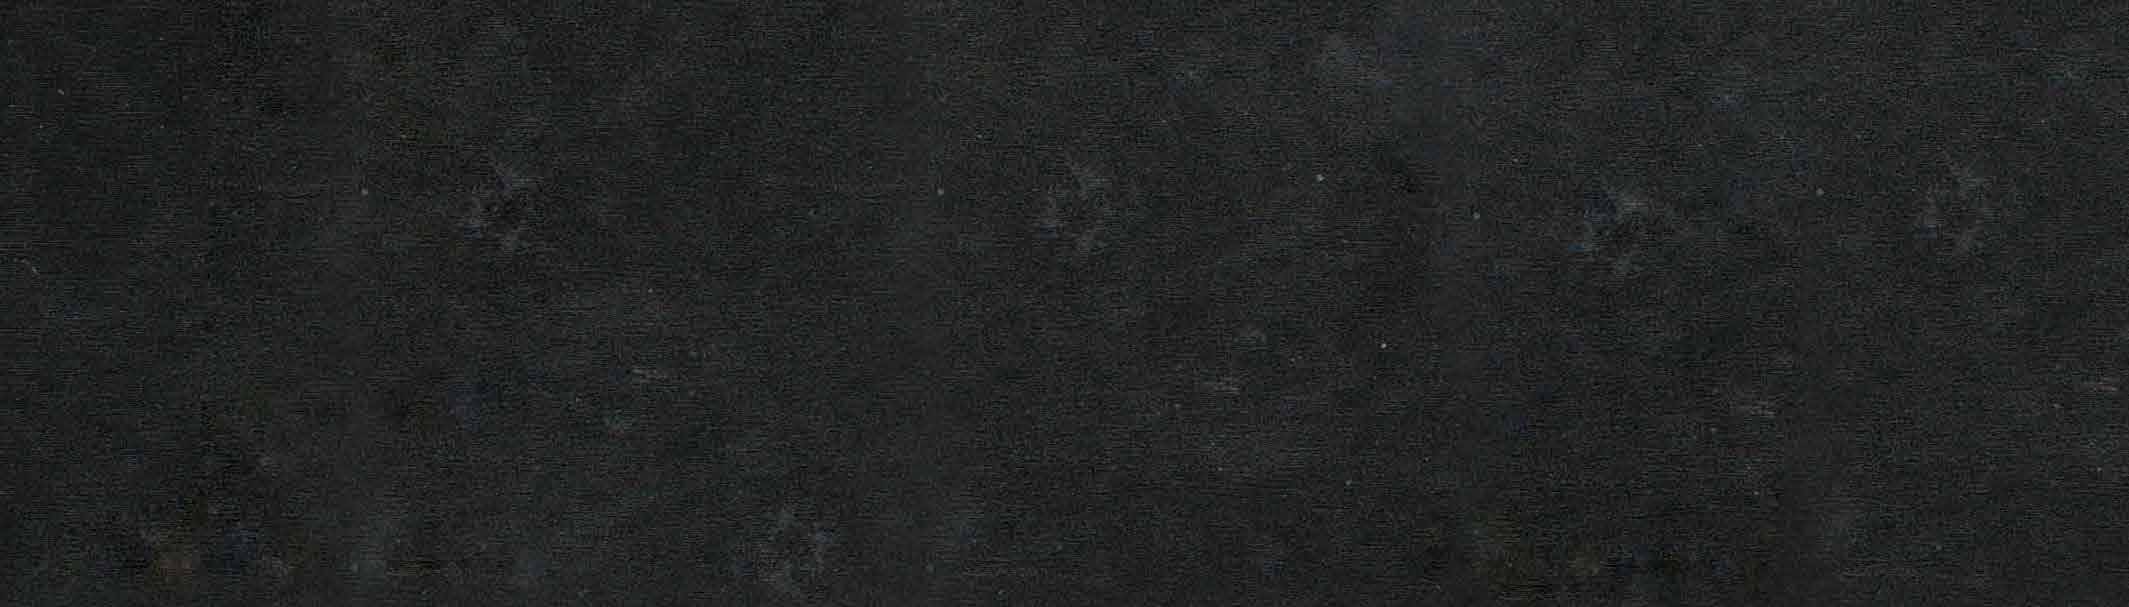 Cubiertas Cuarzos Negro Tao CUB-1007 Es el material idóneo por sus excepcionales características físico-mecánicas, mantiene una extraordinaria dureza que permite diseños más contemporáneos como